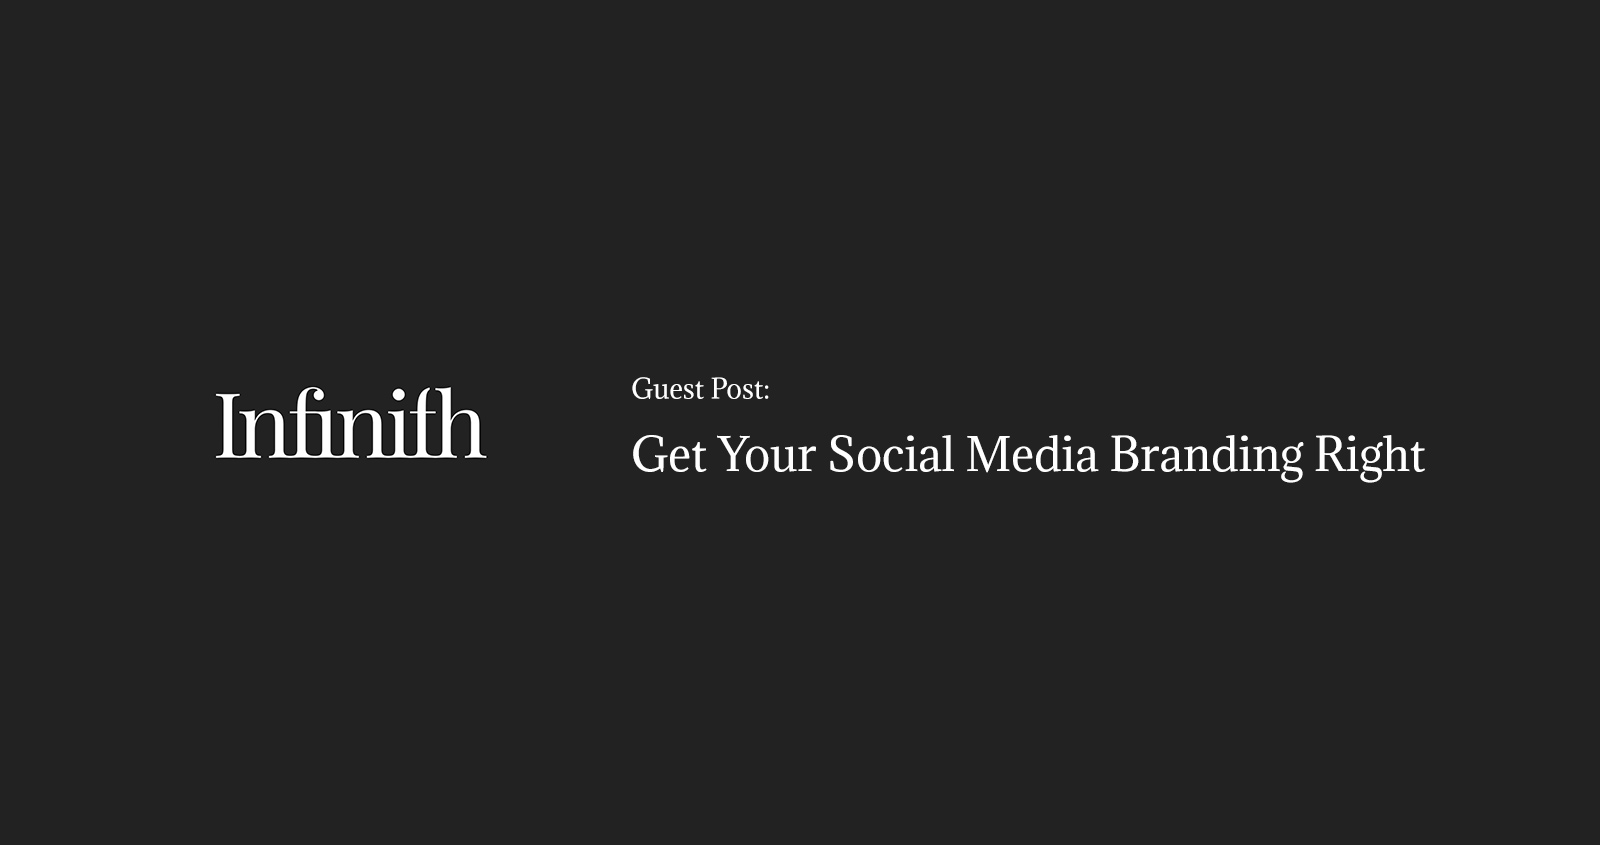 Get Your Social Media Branding Right